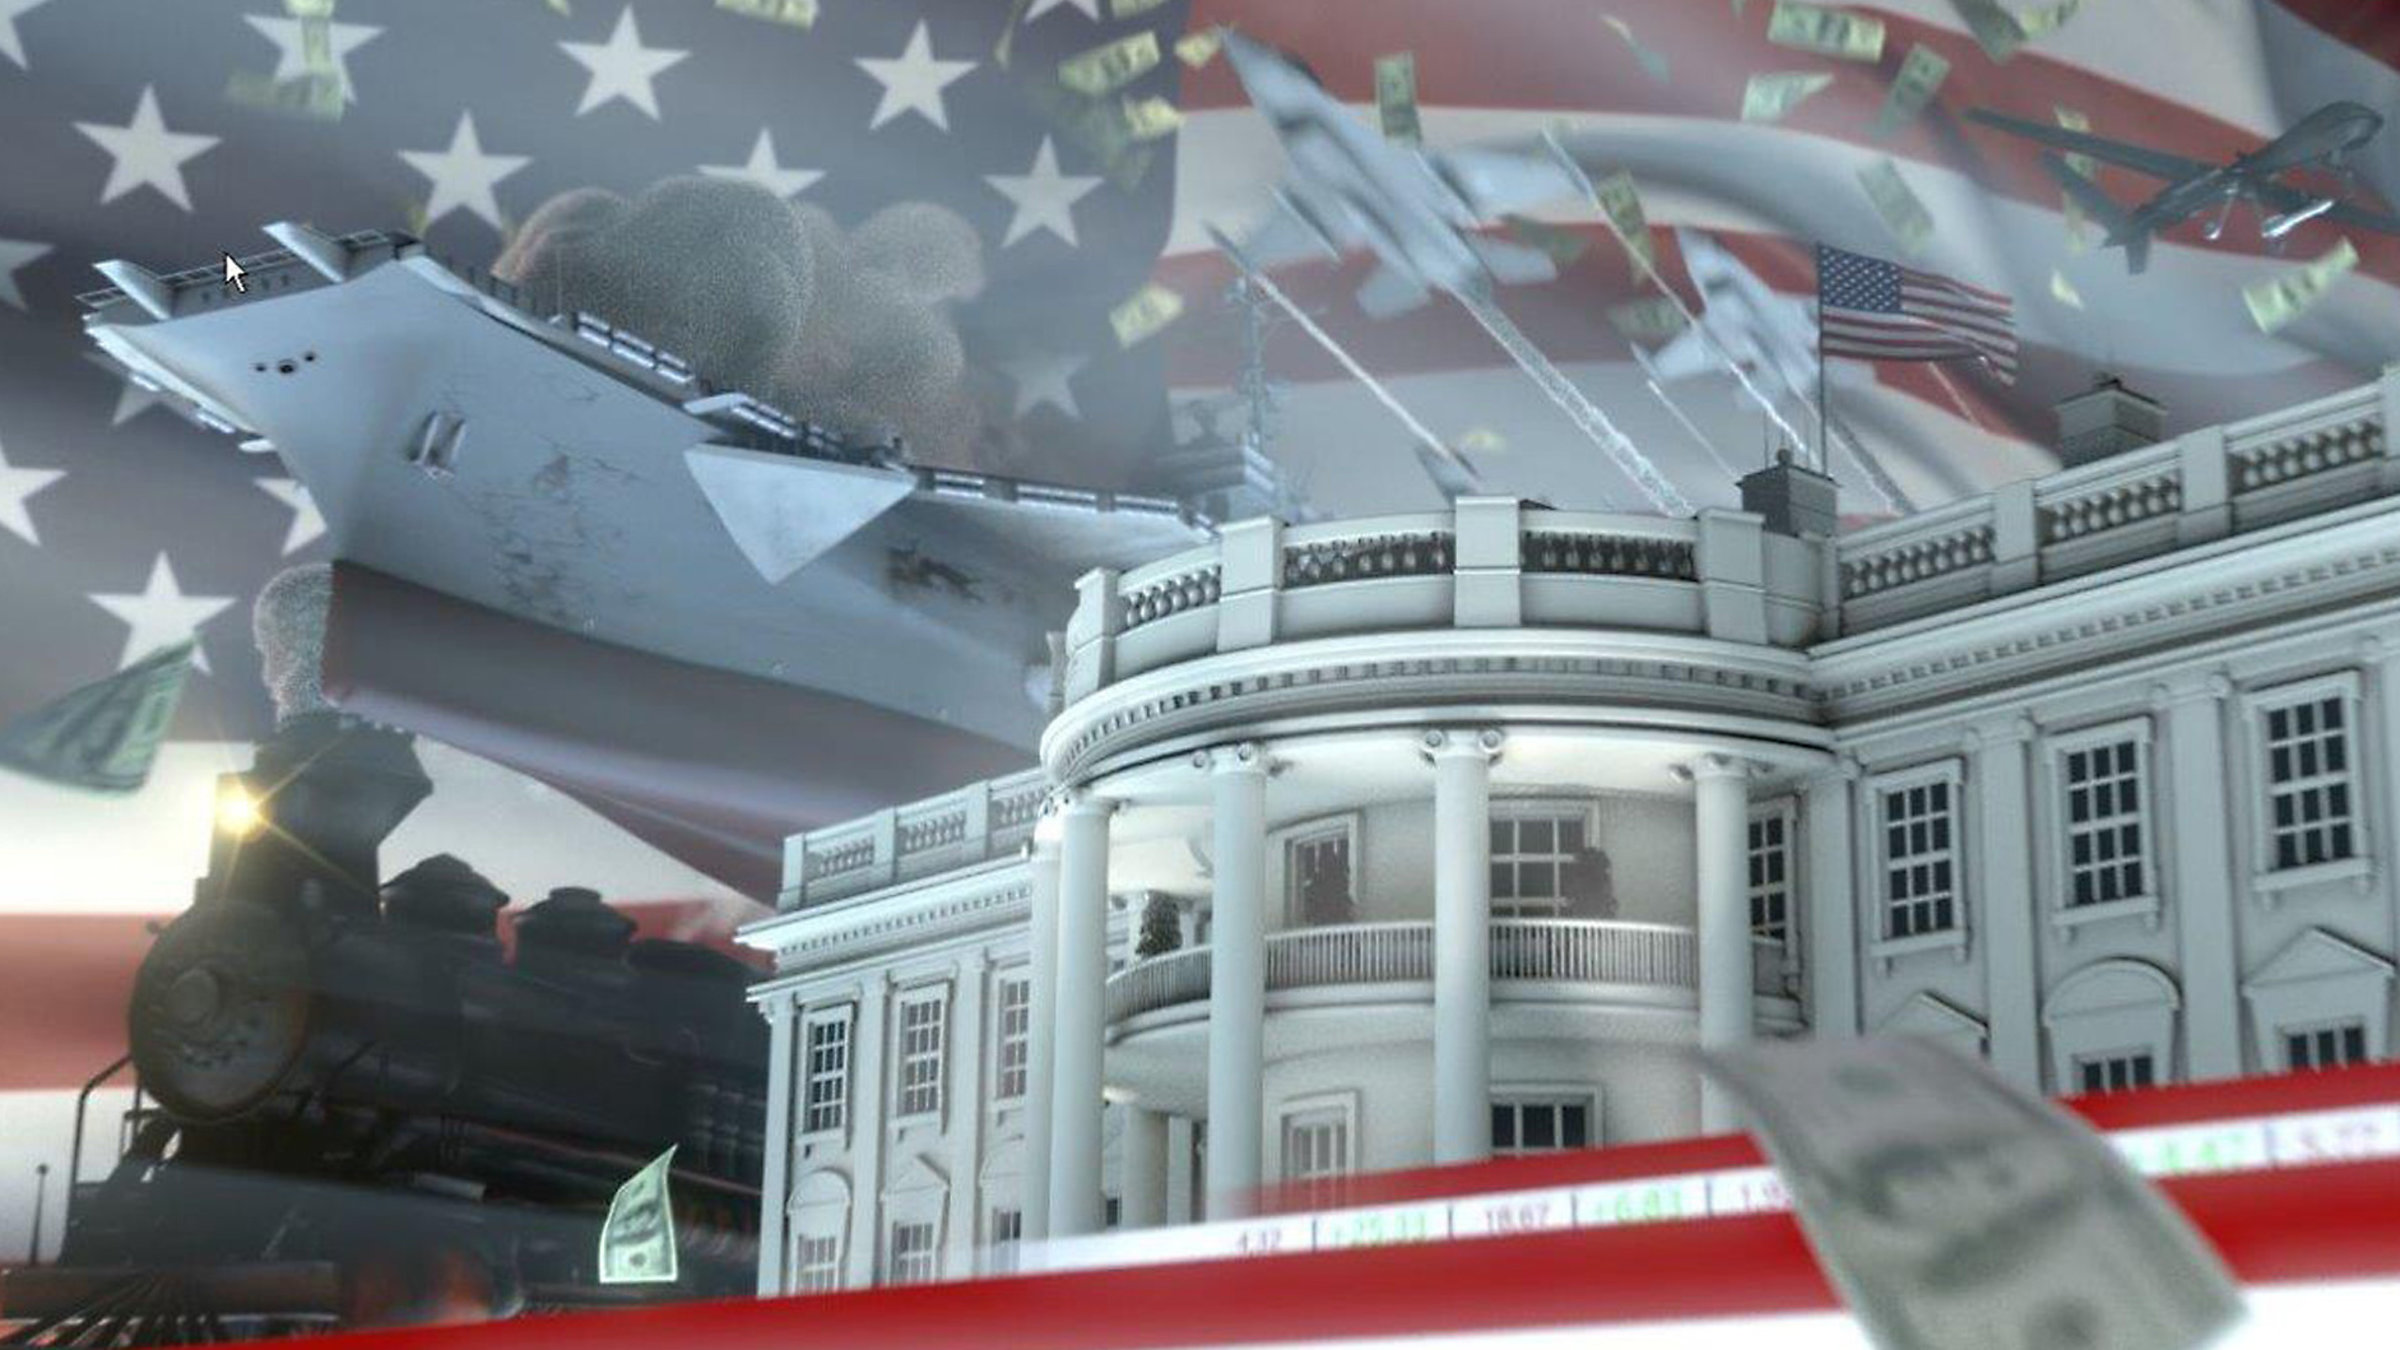 "ZDFzeit: Supermächte - America first?": Titelgrafik: Das Weiße Haus vor einer stilisierten USA-Flagge. Im Hintergrund ist eine alte Dampflok zu sehen, im Vordergrund flattern Dollarscheine.